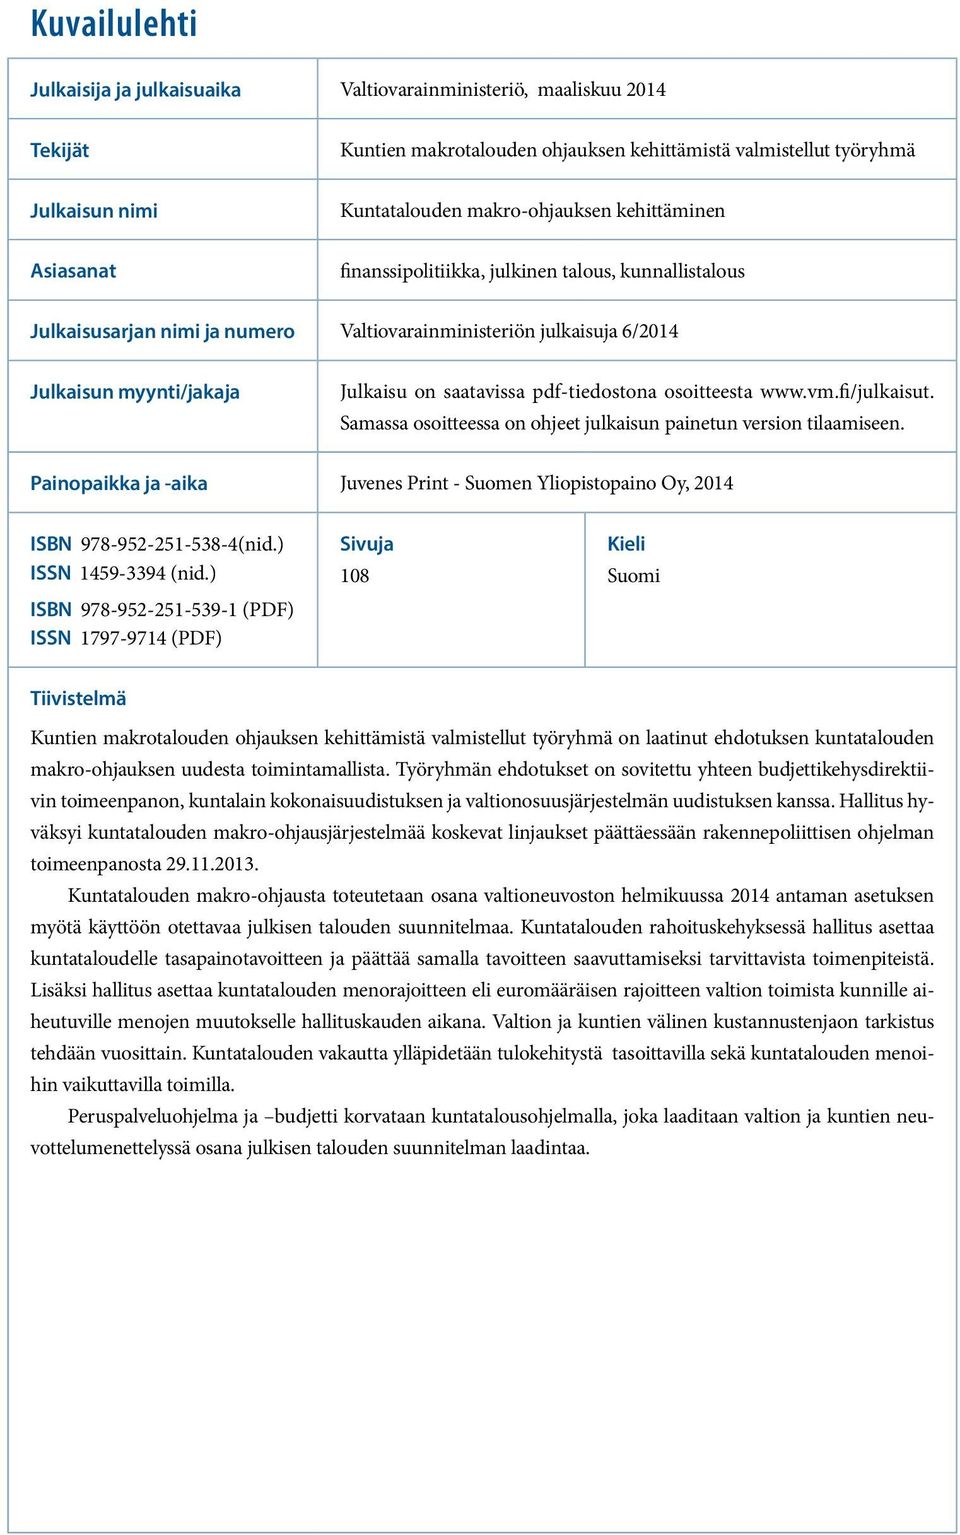 pdf-tiedostona osoitteesta www.vm.fi/julkaisut. Samassa osoitteessa on ohjeet julkaisun painetun version tilaamiseen.